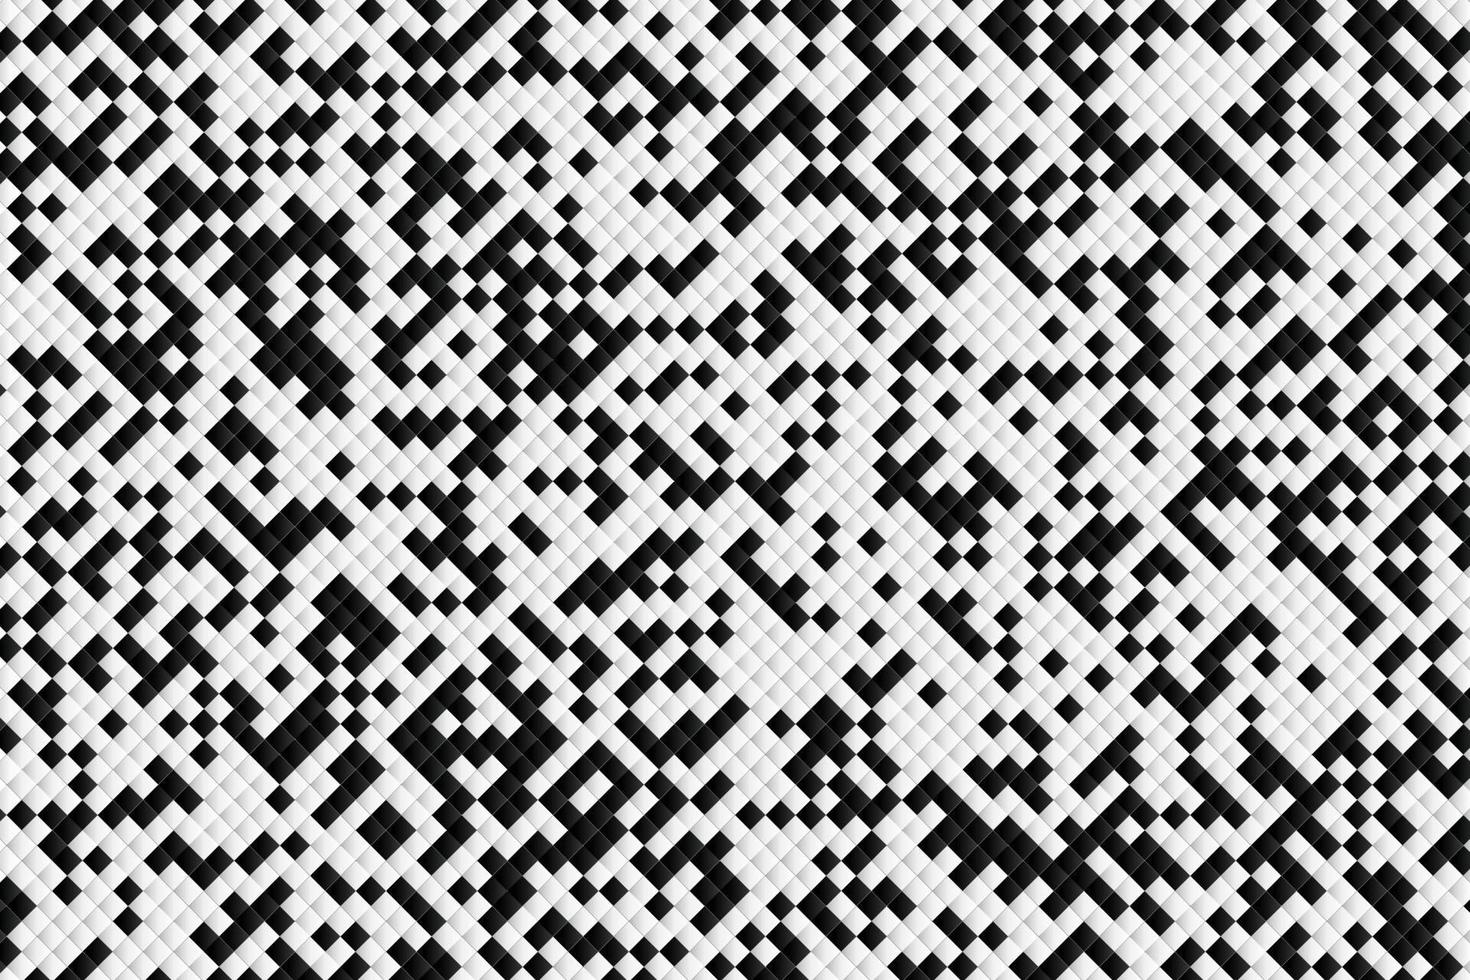 abstracte vierkante patroon van zwart-wit ontwerp achtergrond. illustratie vector eps10